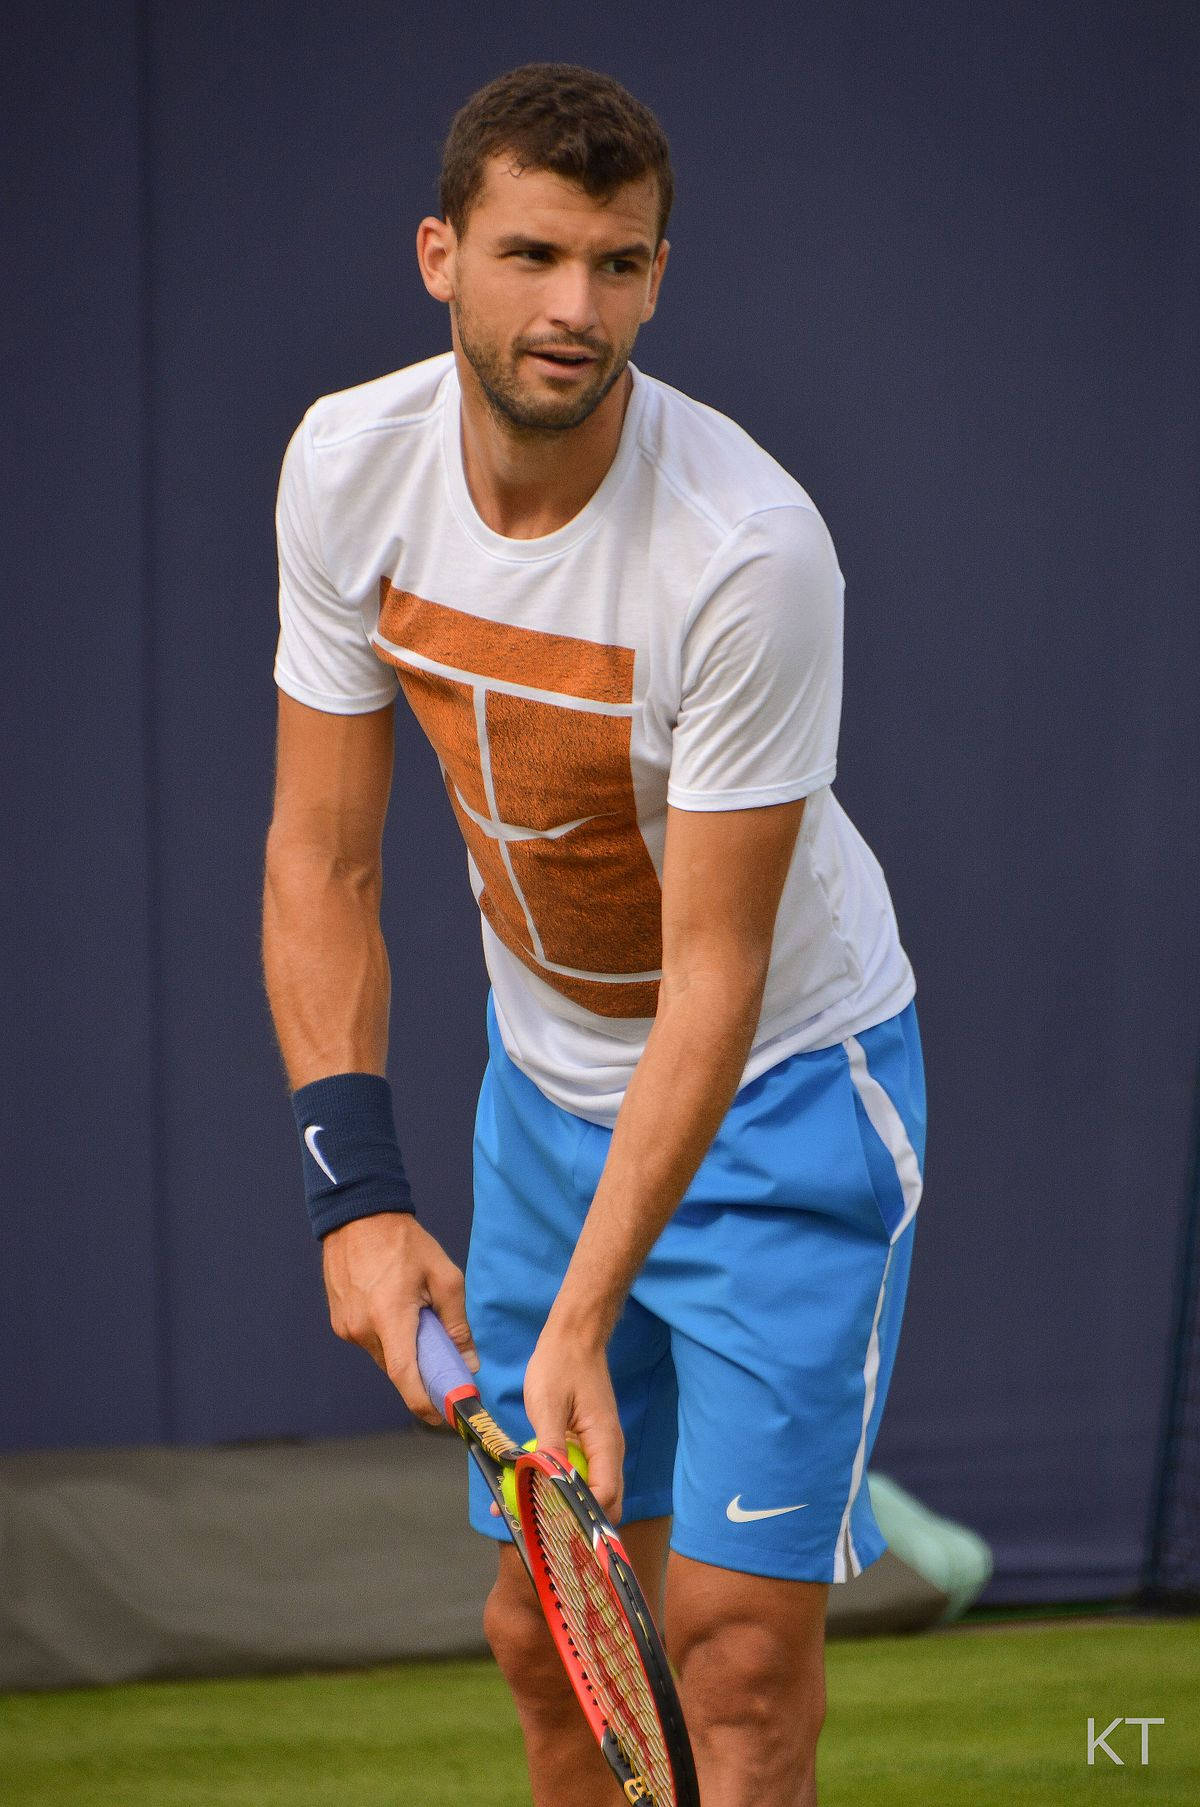 Grigordimitrov En Camiseta De Tenis Estampada. Fondo de pantalla